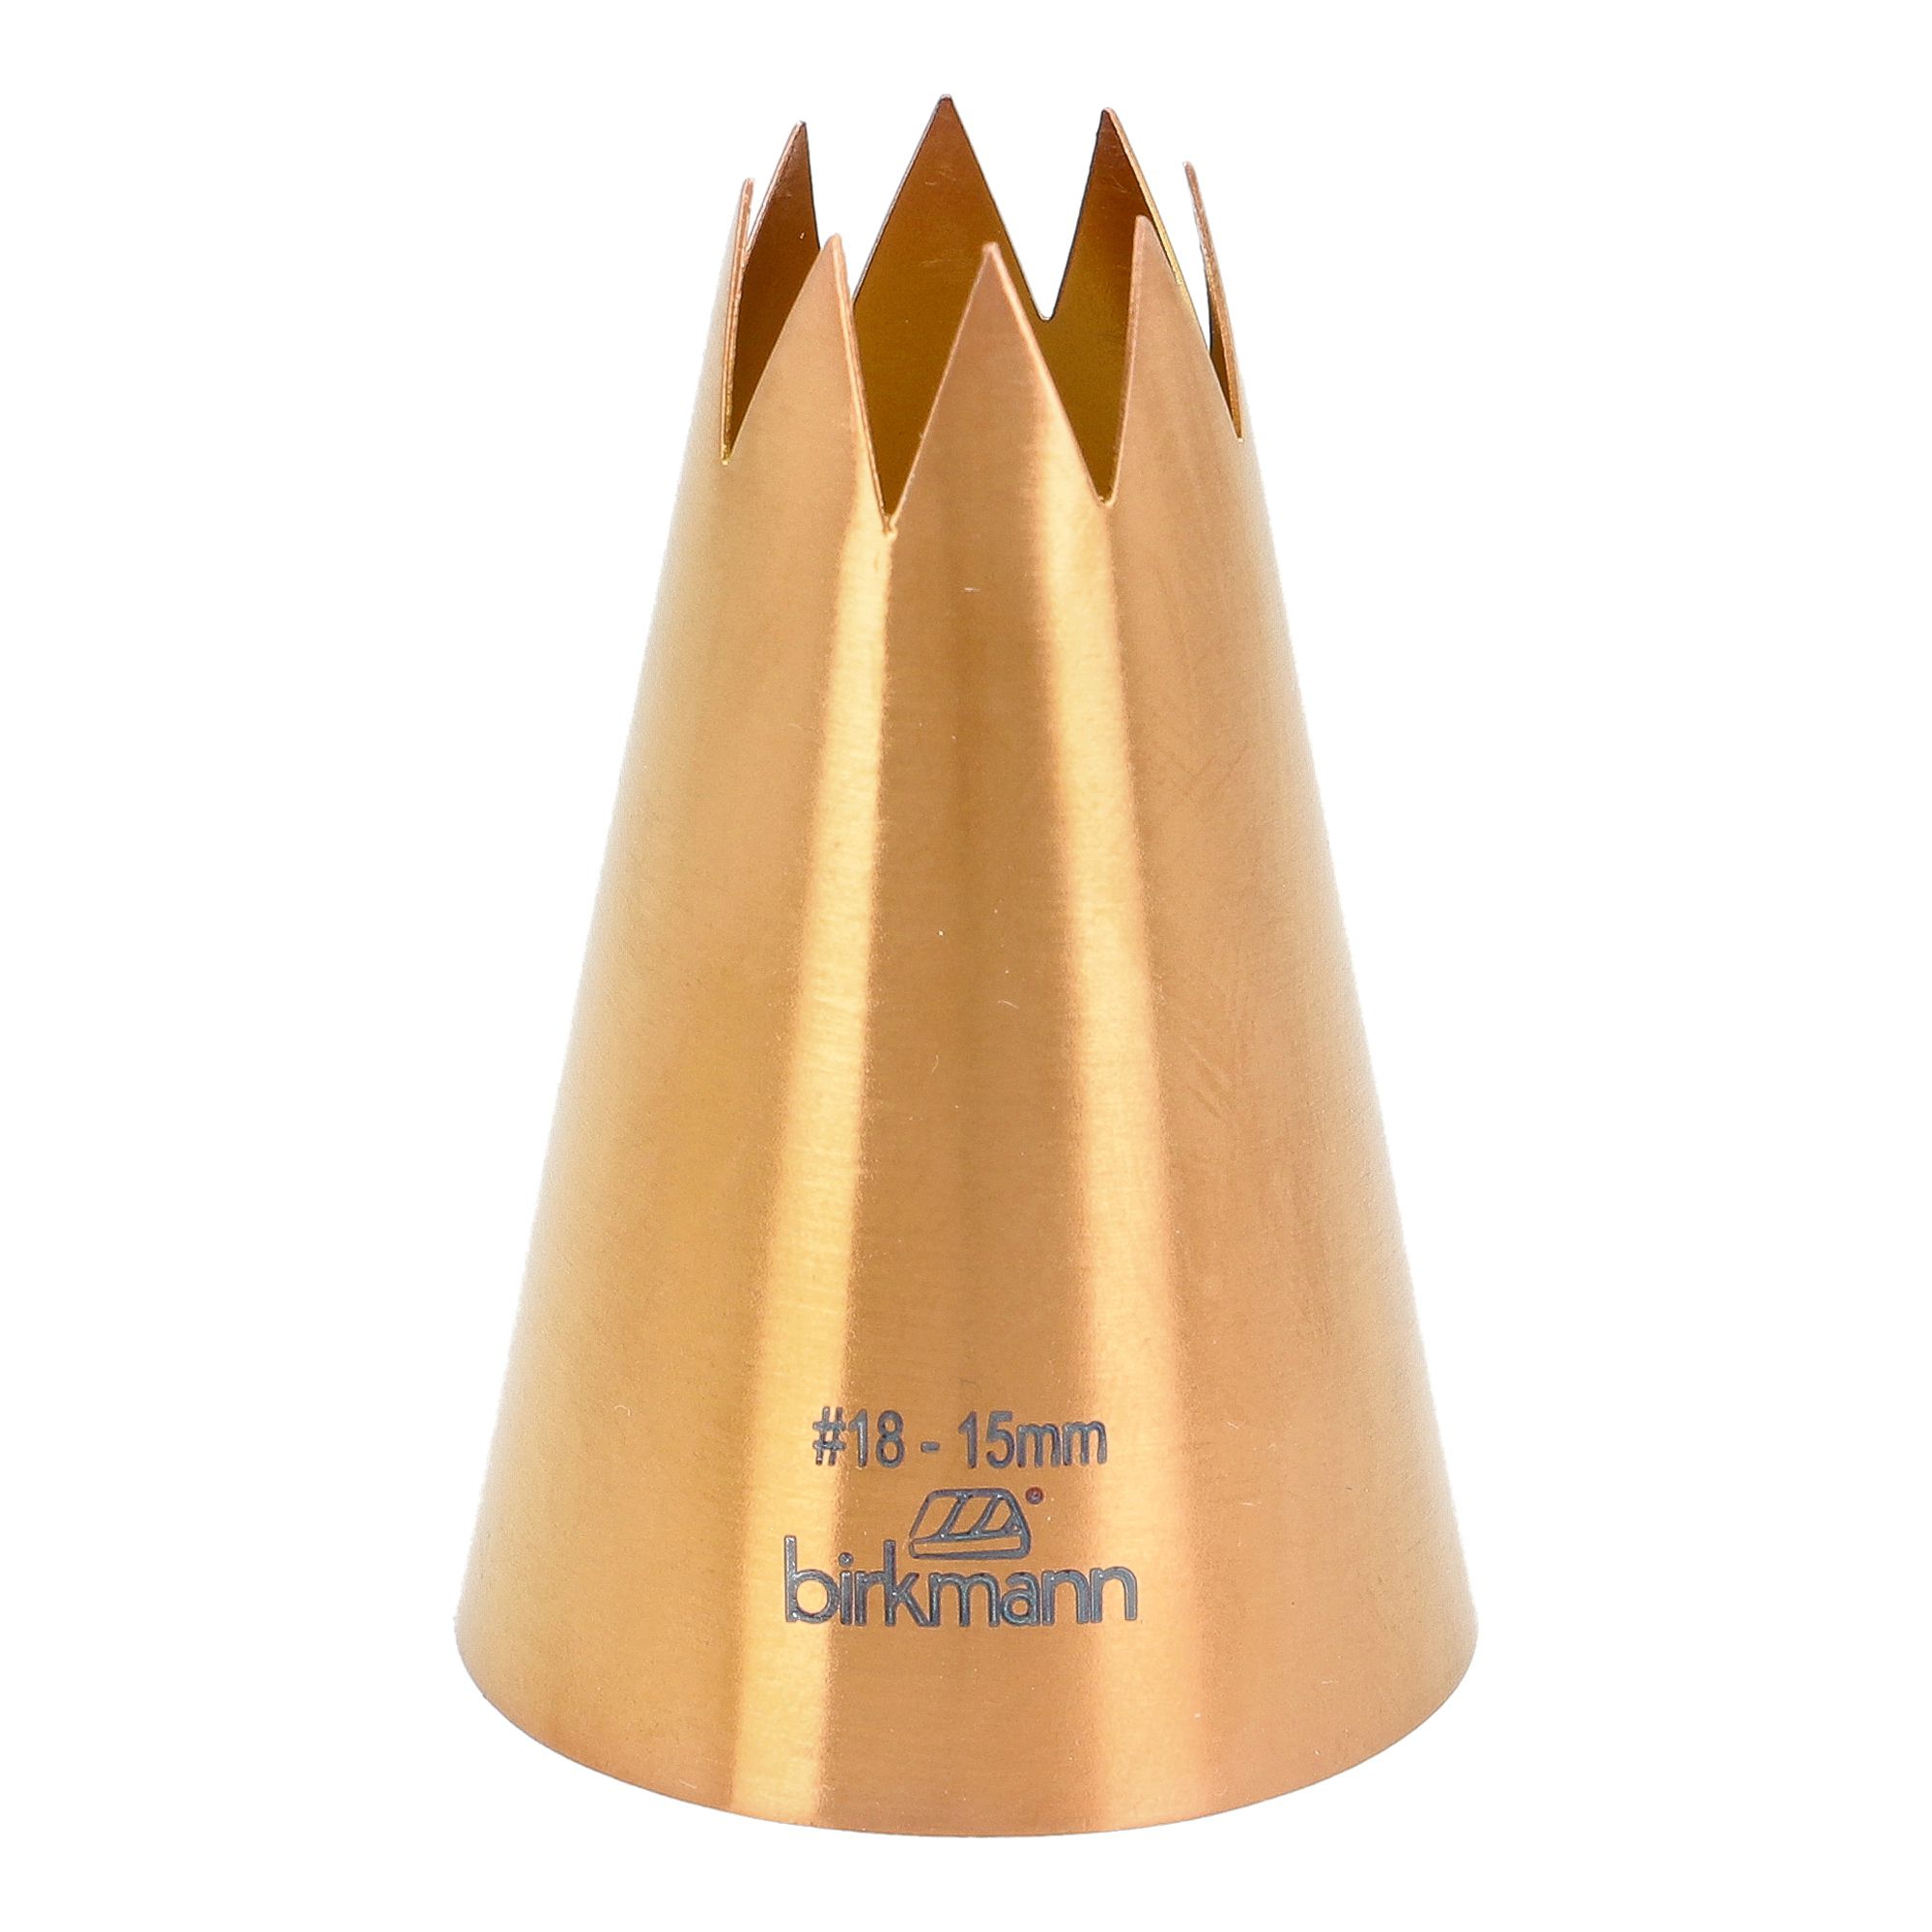 Birkmann - Star nozzle copper coloured #18 - 1 5mm